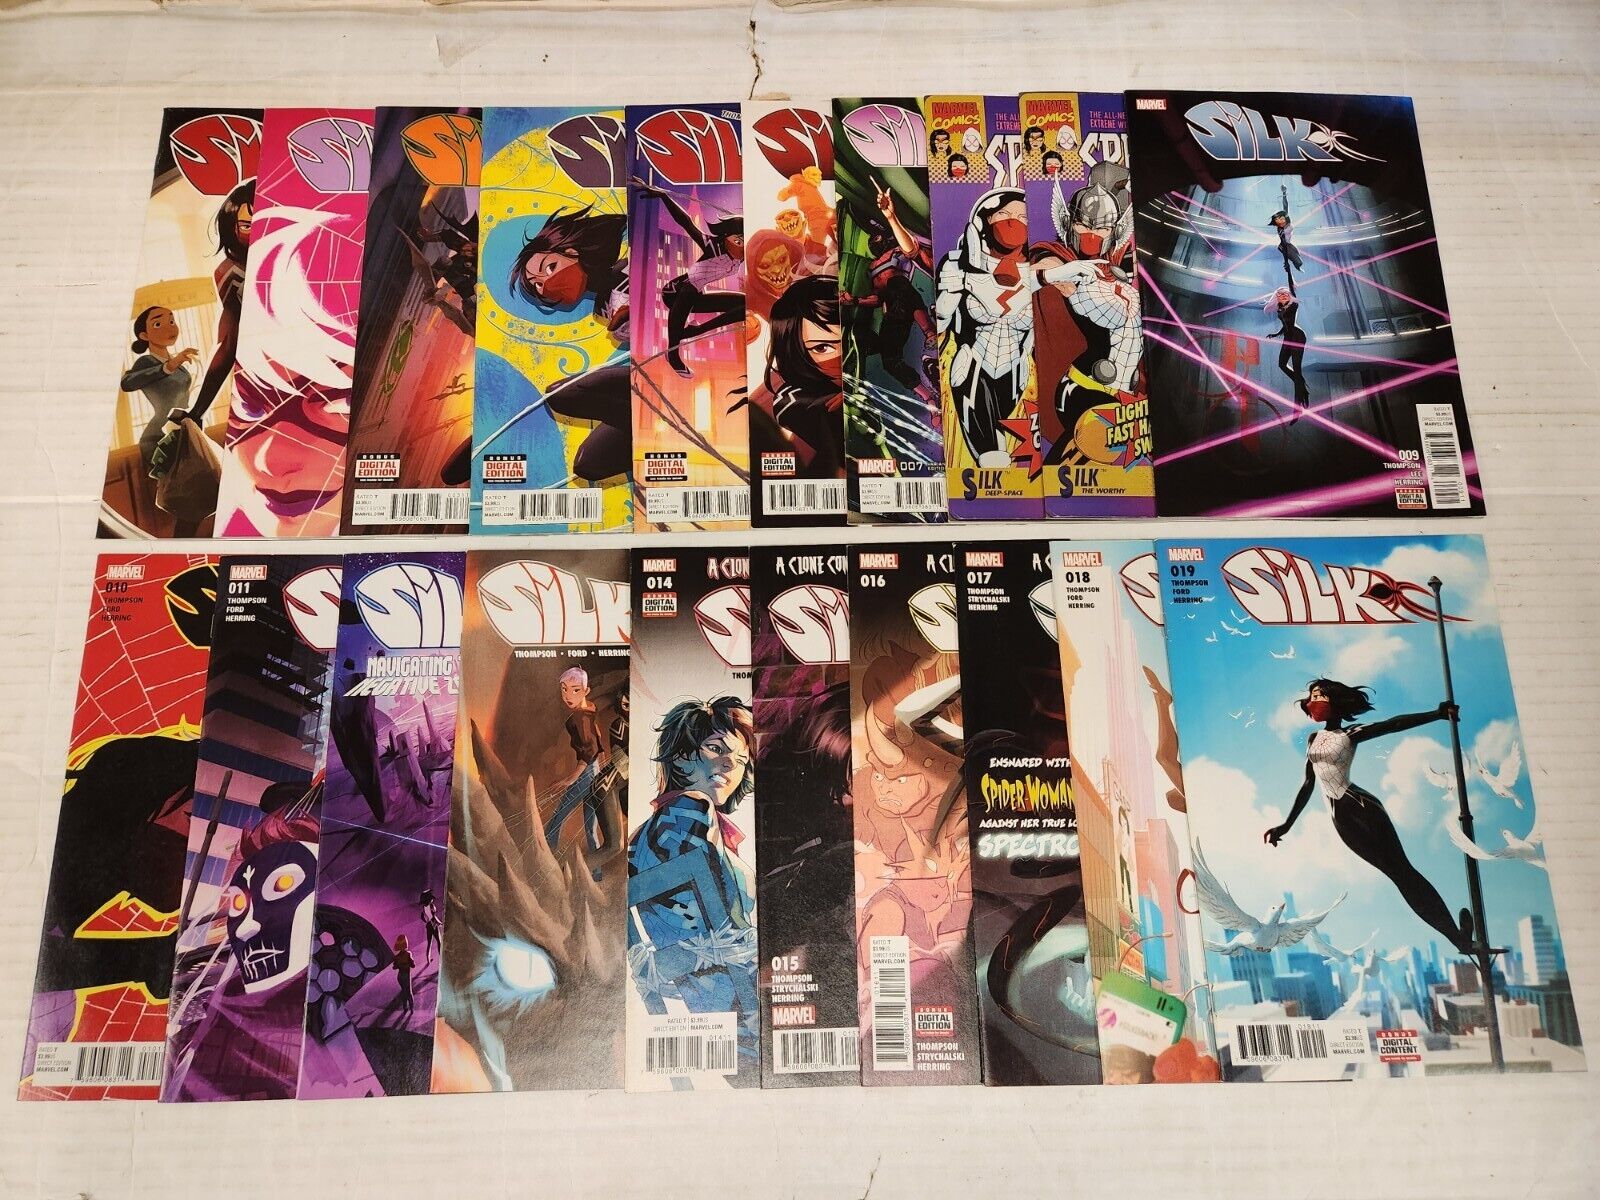 Silk 1-19 + Variants Complete Series 20 Comic Books Total Thompson Marvel 2015